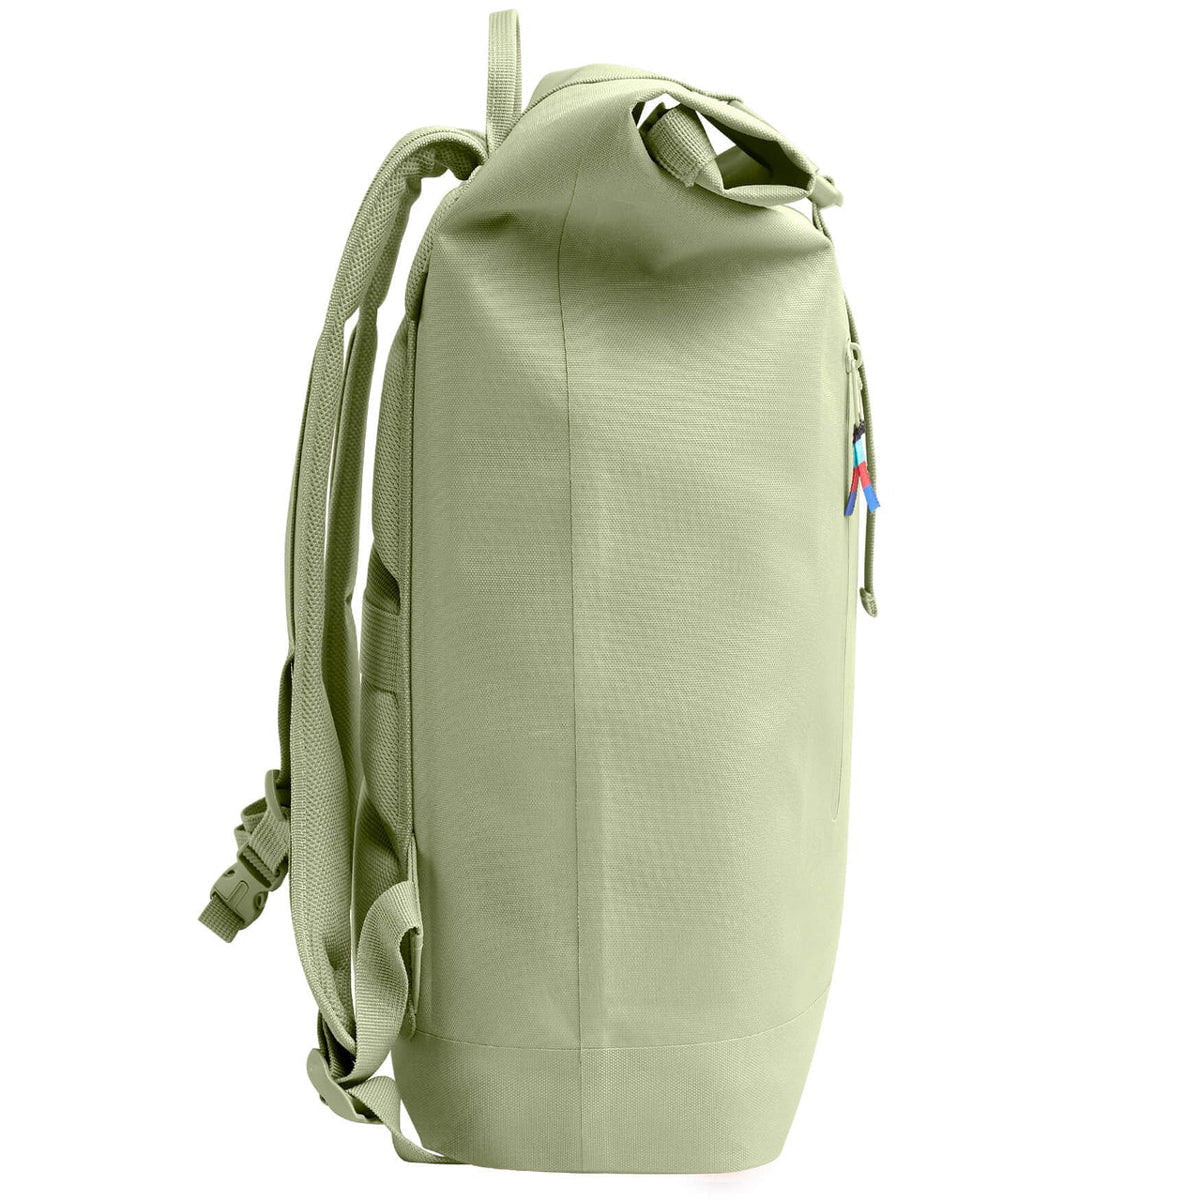 Got Bag Rolltop Lite Backpack - Bonefish image 4